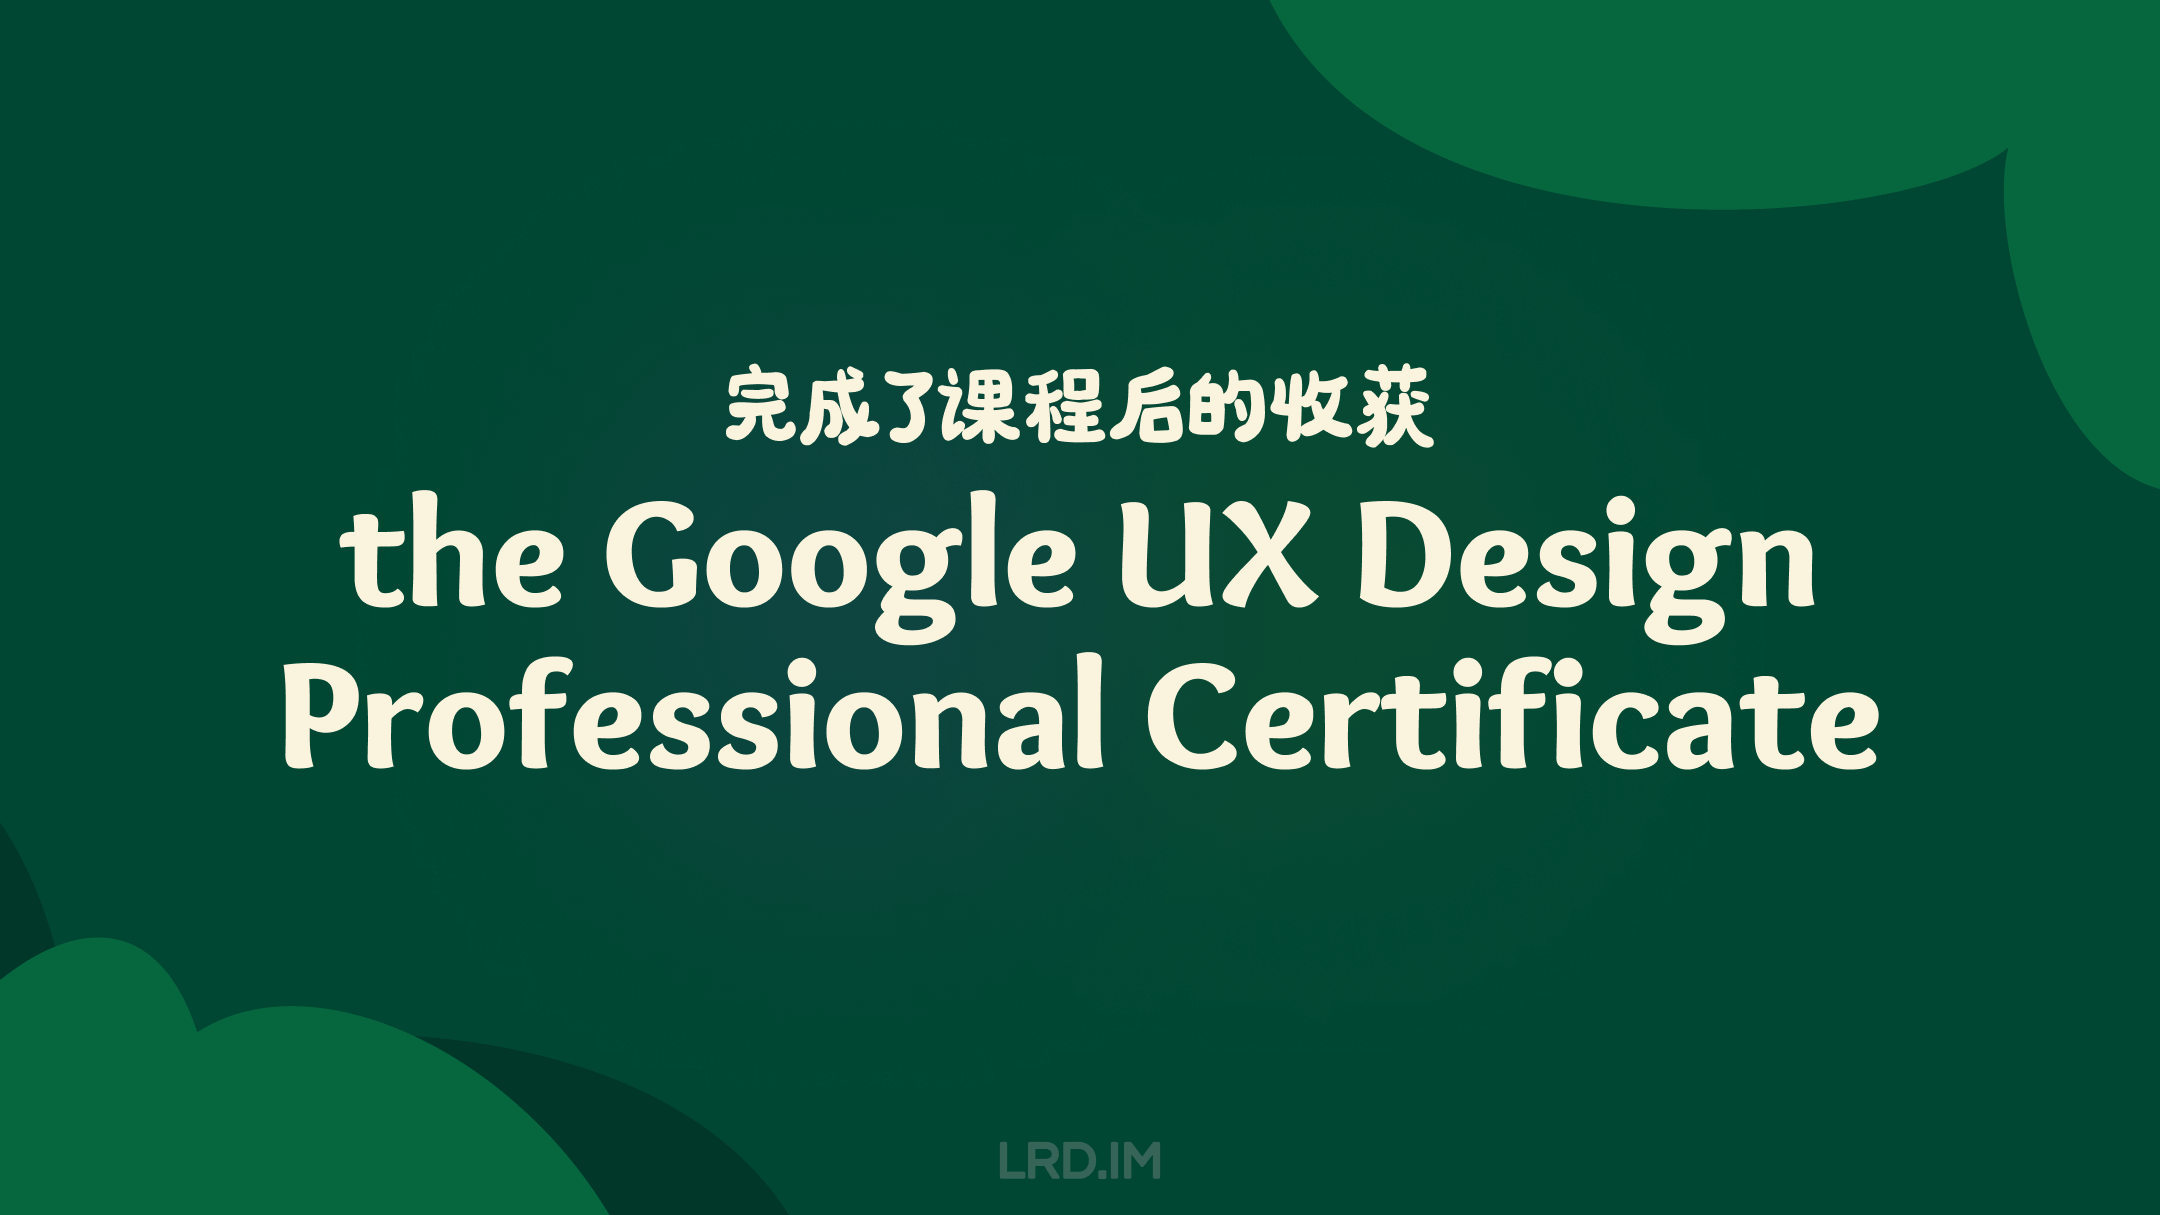 深绿色背景的图片，白色中英文文字标题“完成该课程后的收获：the Google UX Design Professional Certificate”。图片底部出现了网站的 Logo  “LRD.IM”。